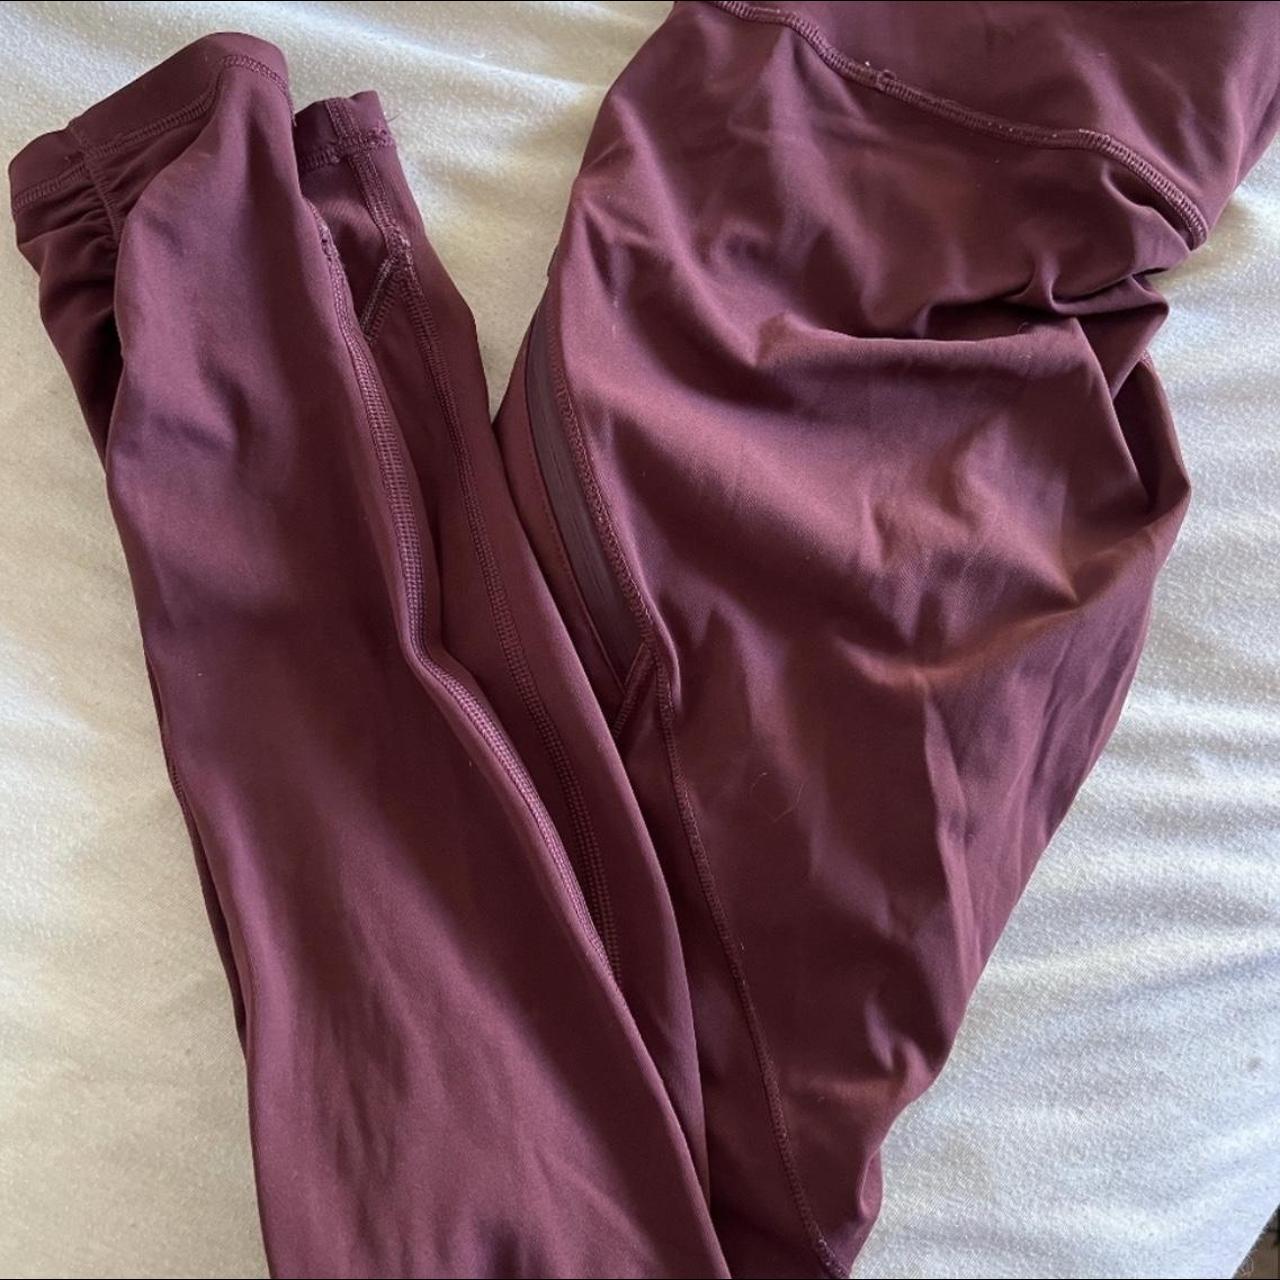 Lulu lemon Speed Up Tight burgundy leggings… these - Depop